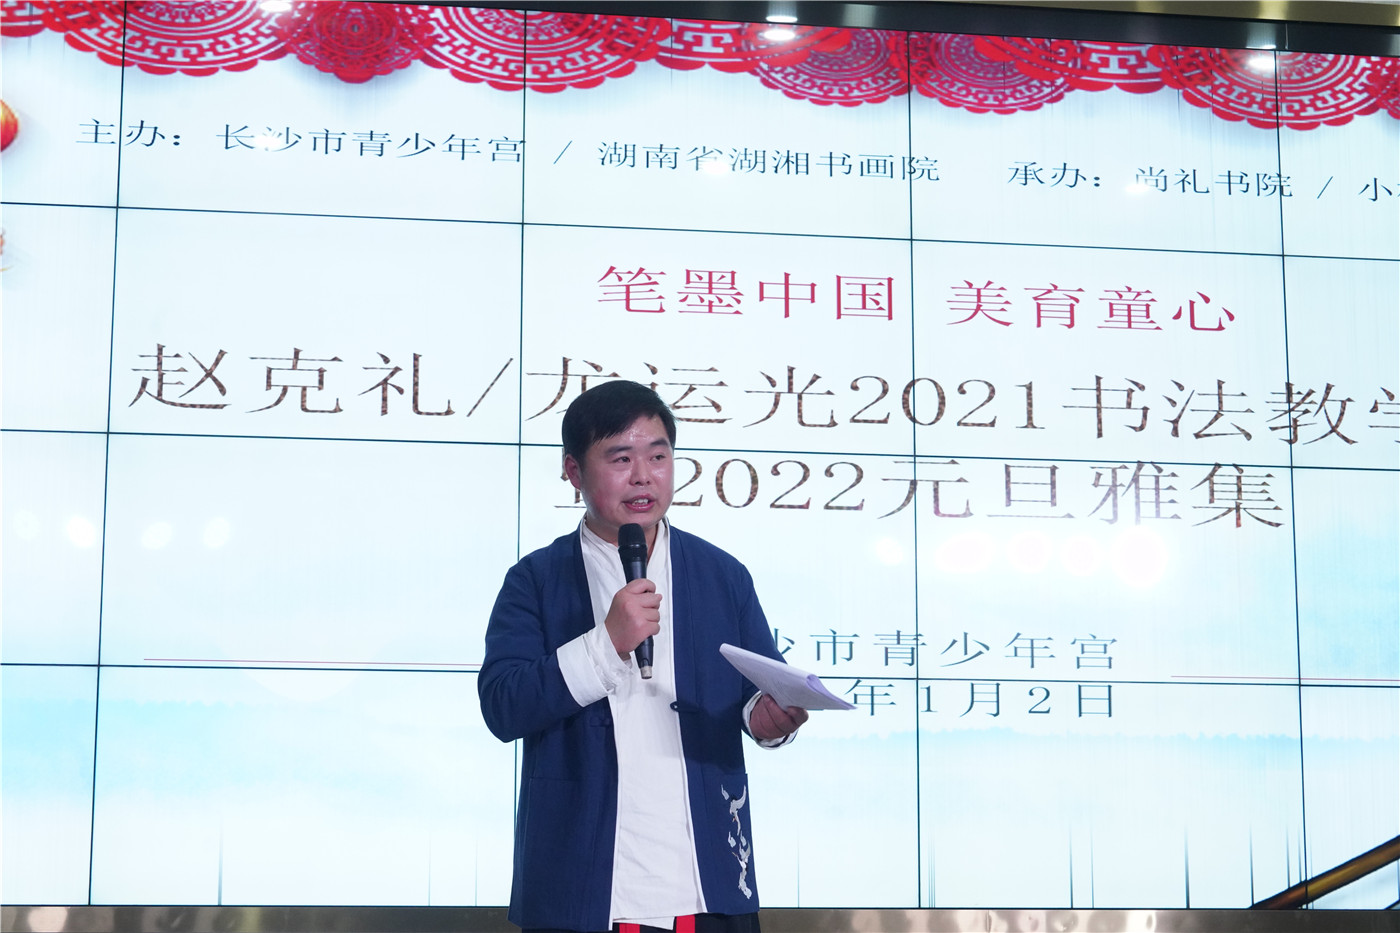 赵克礼/龙运光2021书法教学年会在长沙市青少年宫举行